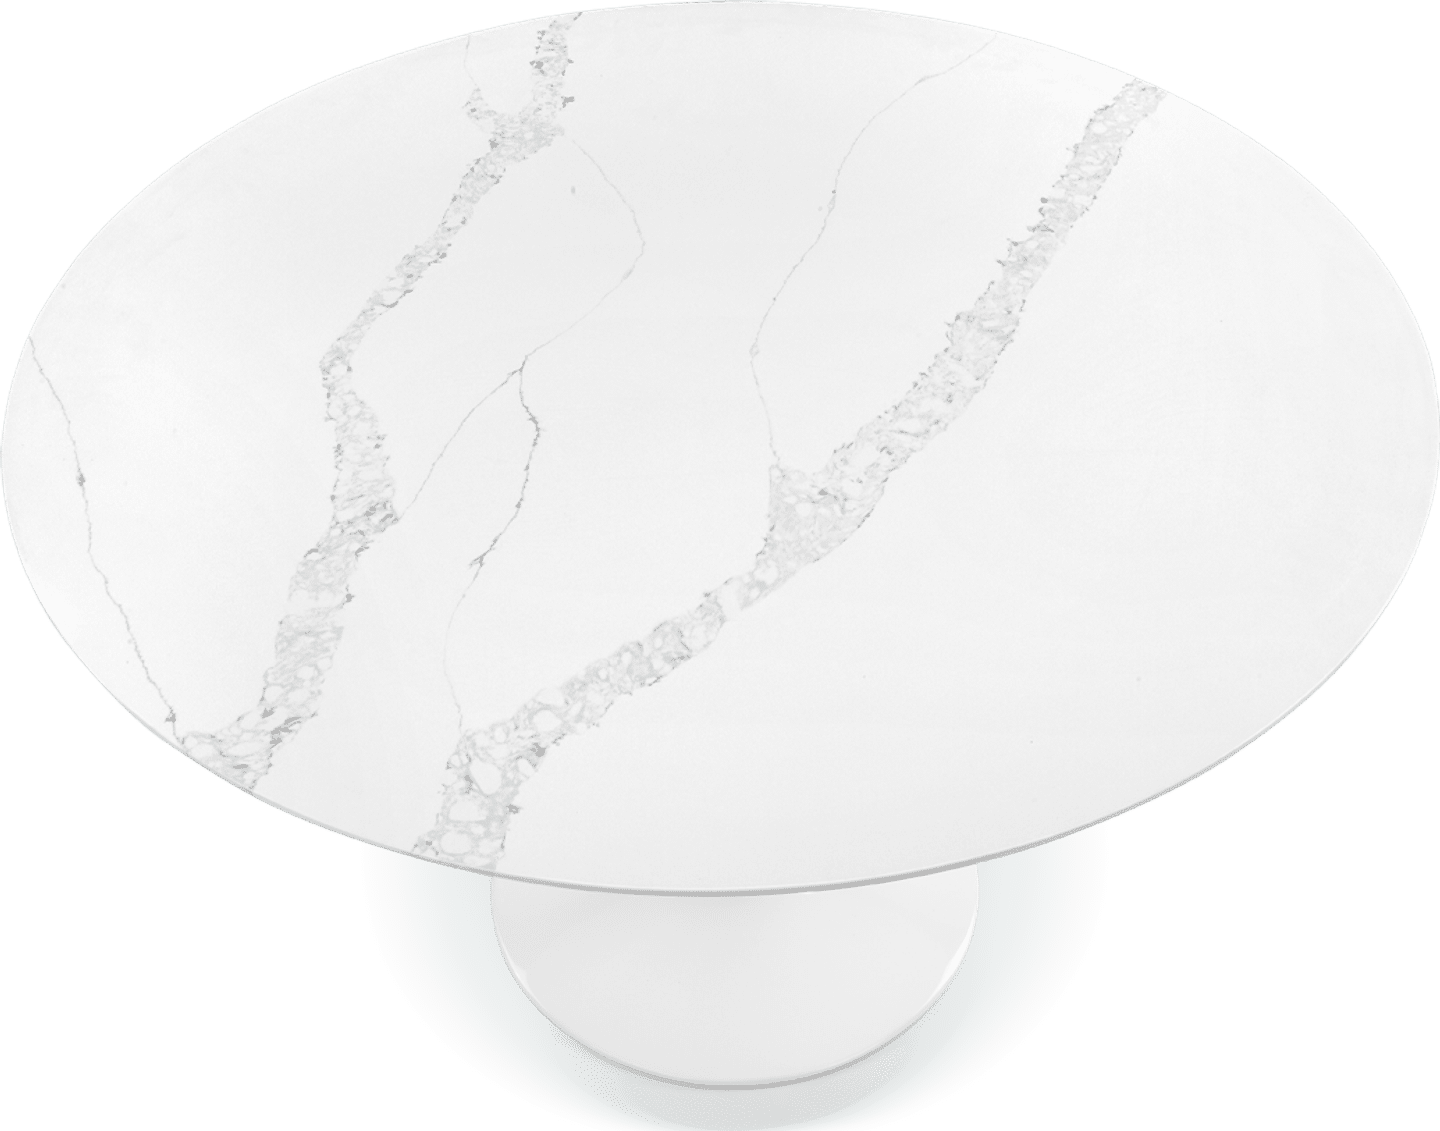 Tulipan rundt spisebord - hvit marmor White Quartz 160/120 CM image.